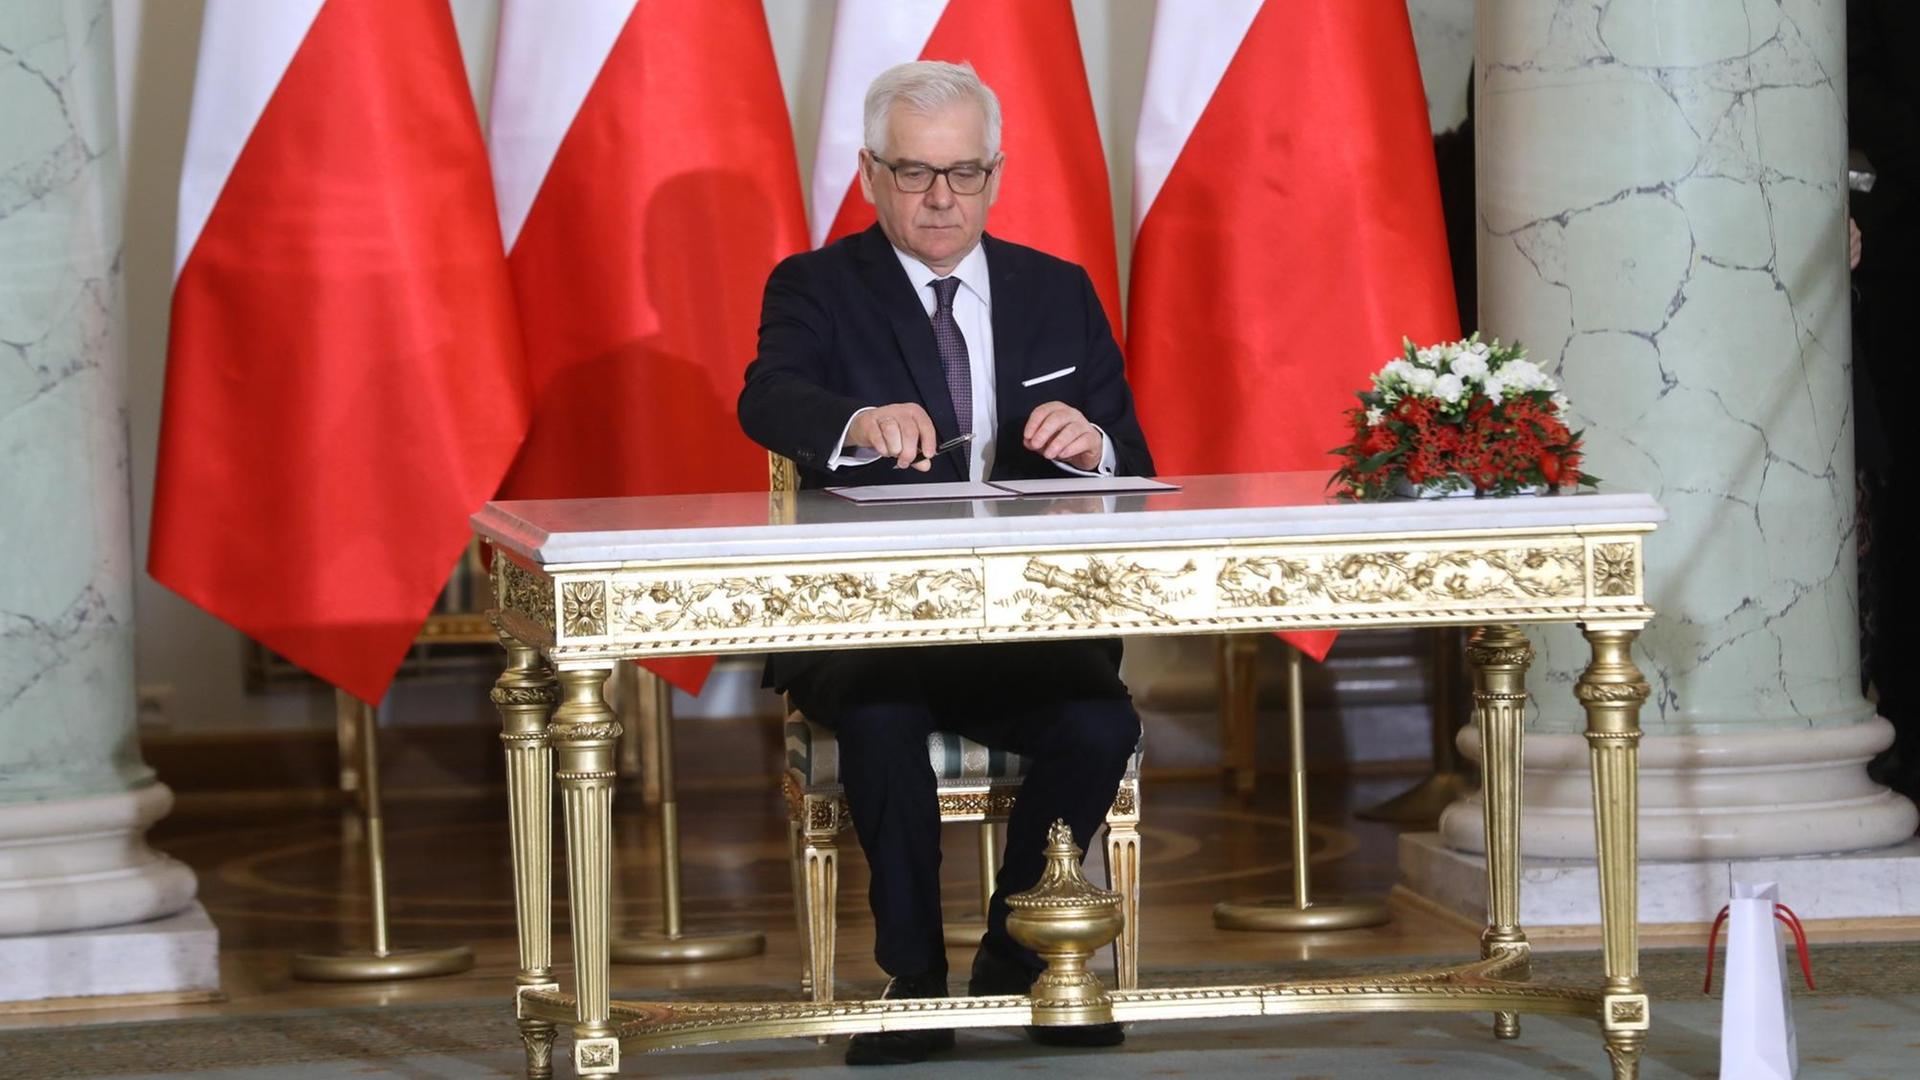 Jacek Czaputowicz - seit 9. Januar 2018 neuer Außenminister Polens - unterschreibt Dokumente